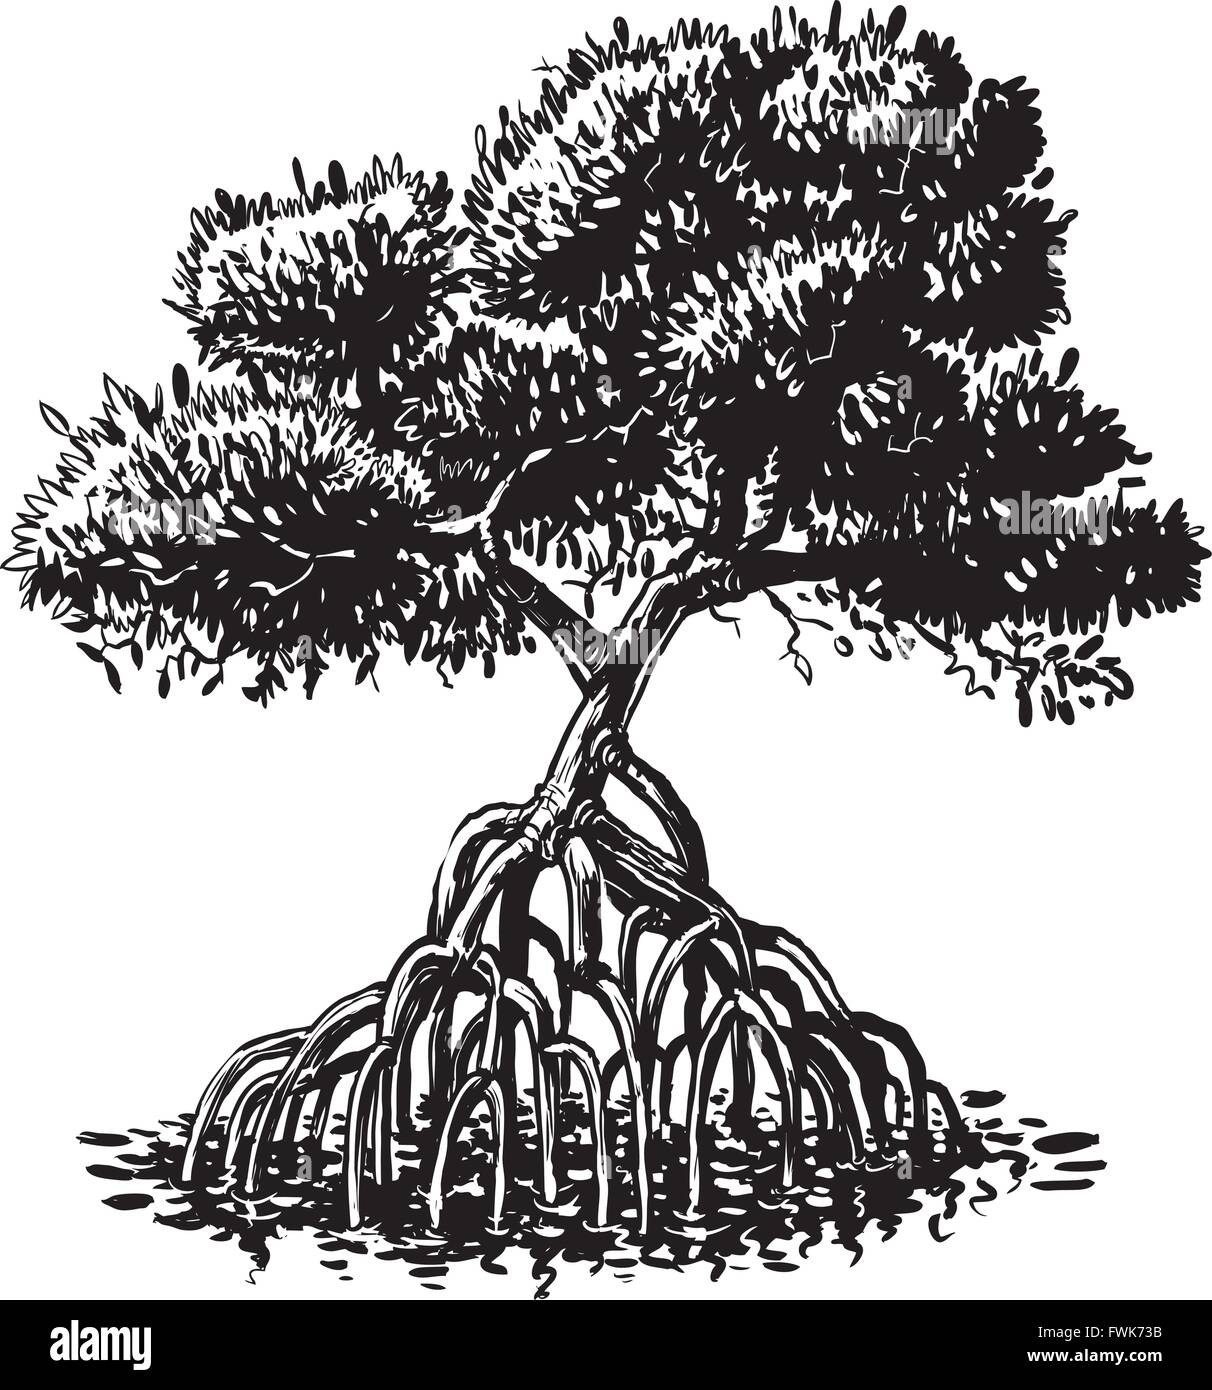 Vector cartoon clip art illustrazione di un bianco e nero o inchiostro monocromatico di disegno di un albero di mangrovie. Illustrazione Vettoriale